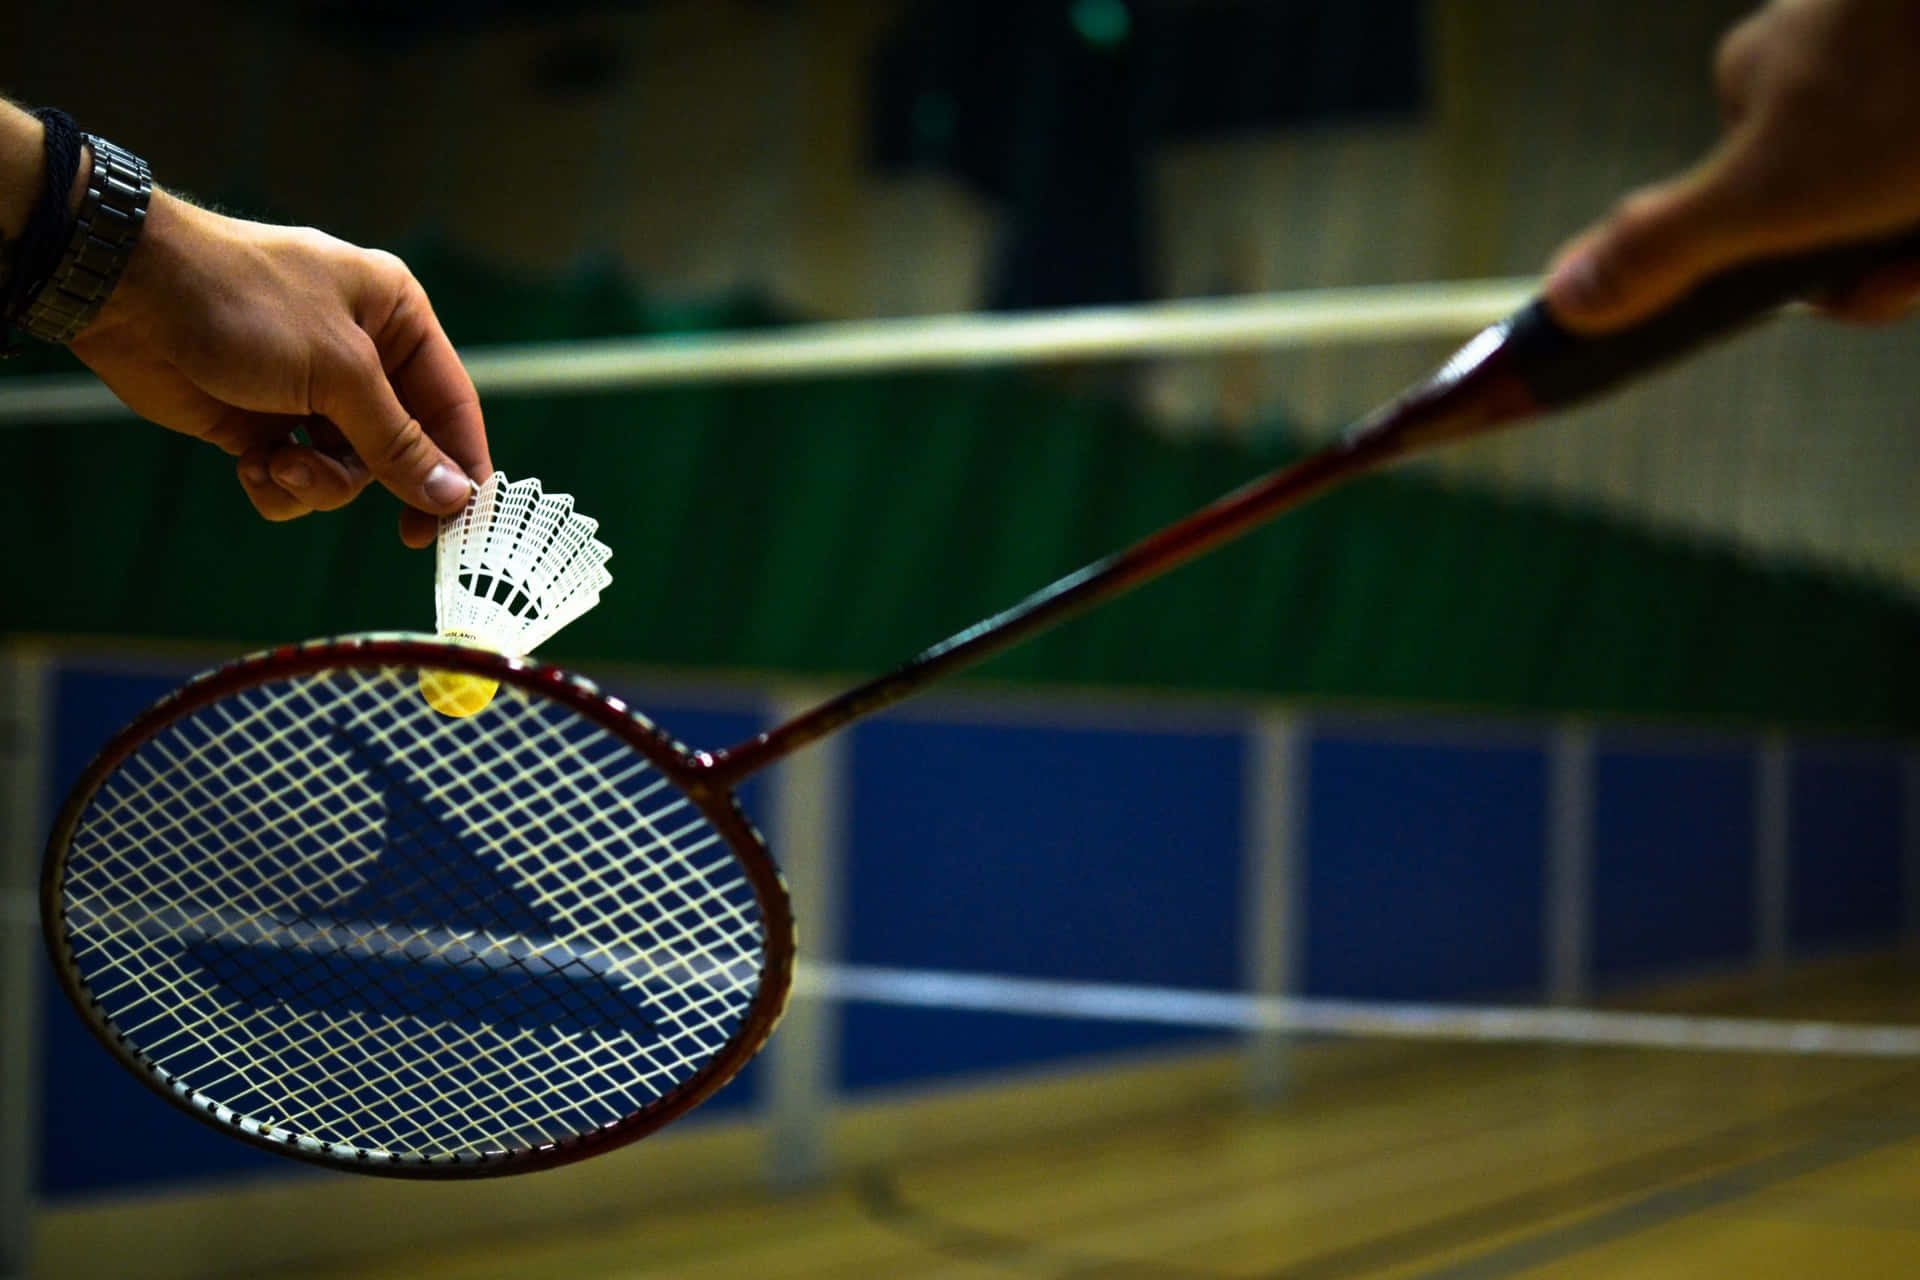 Migliorala Tua Reazione Durante Le Intense Partite Di Badminton.